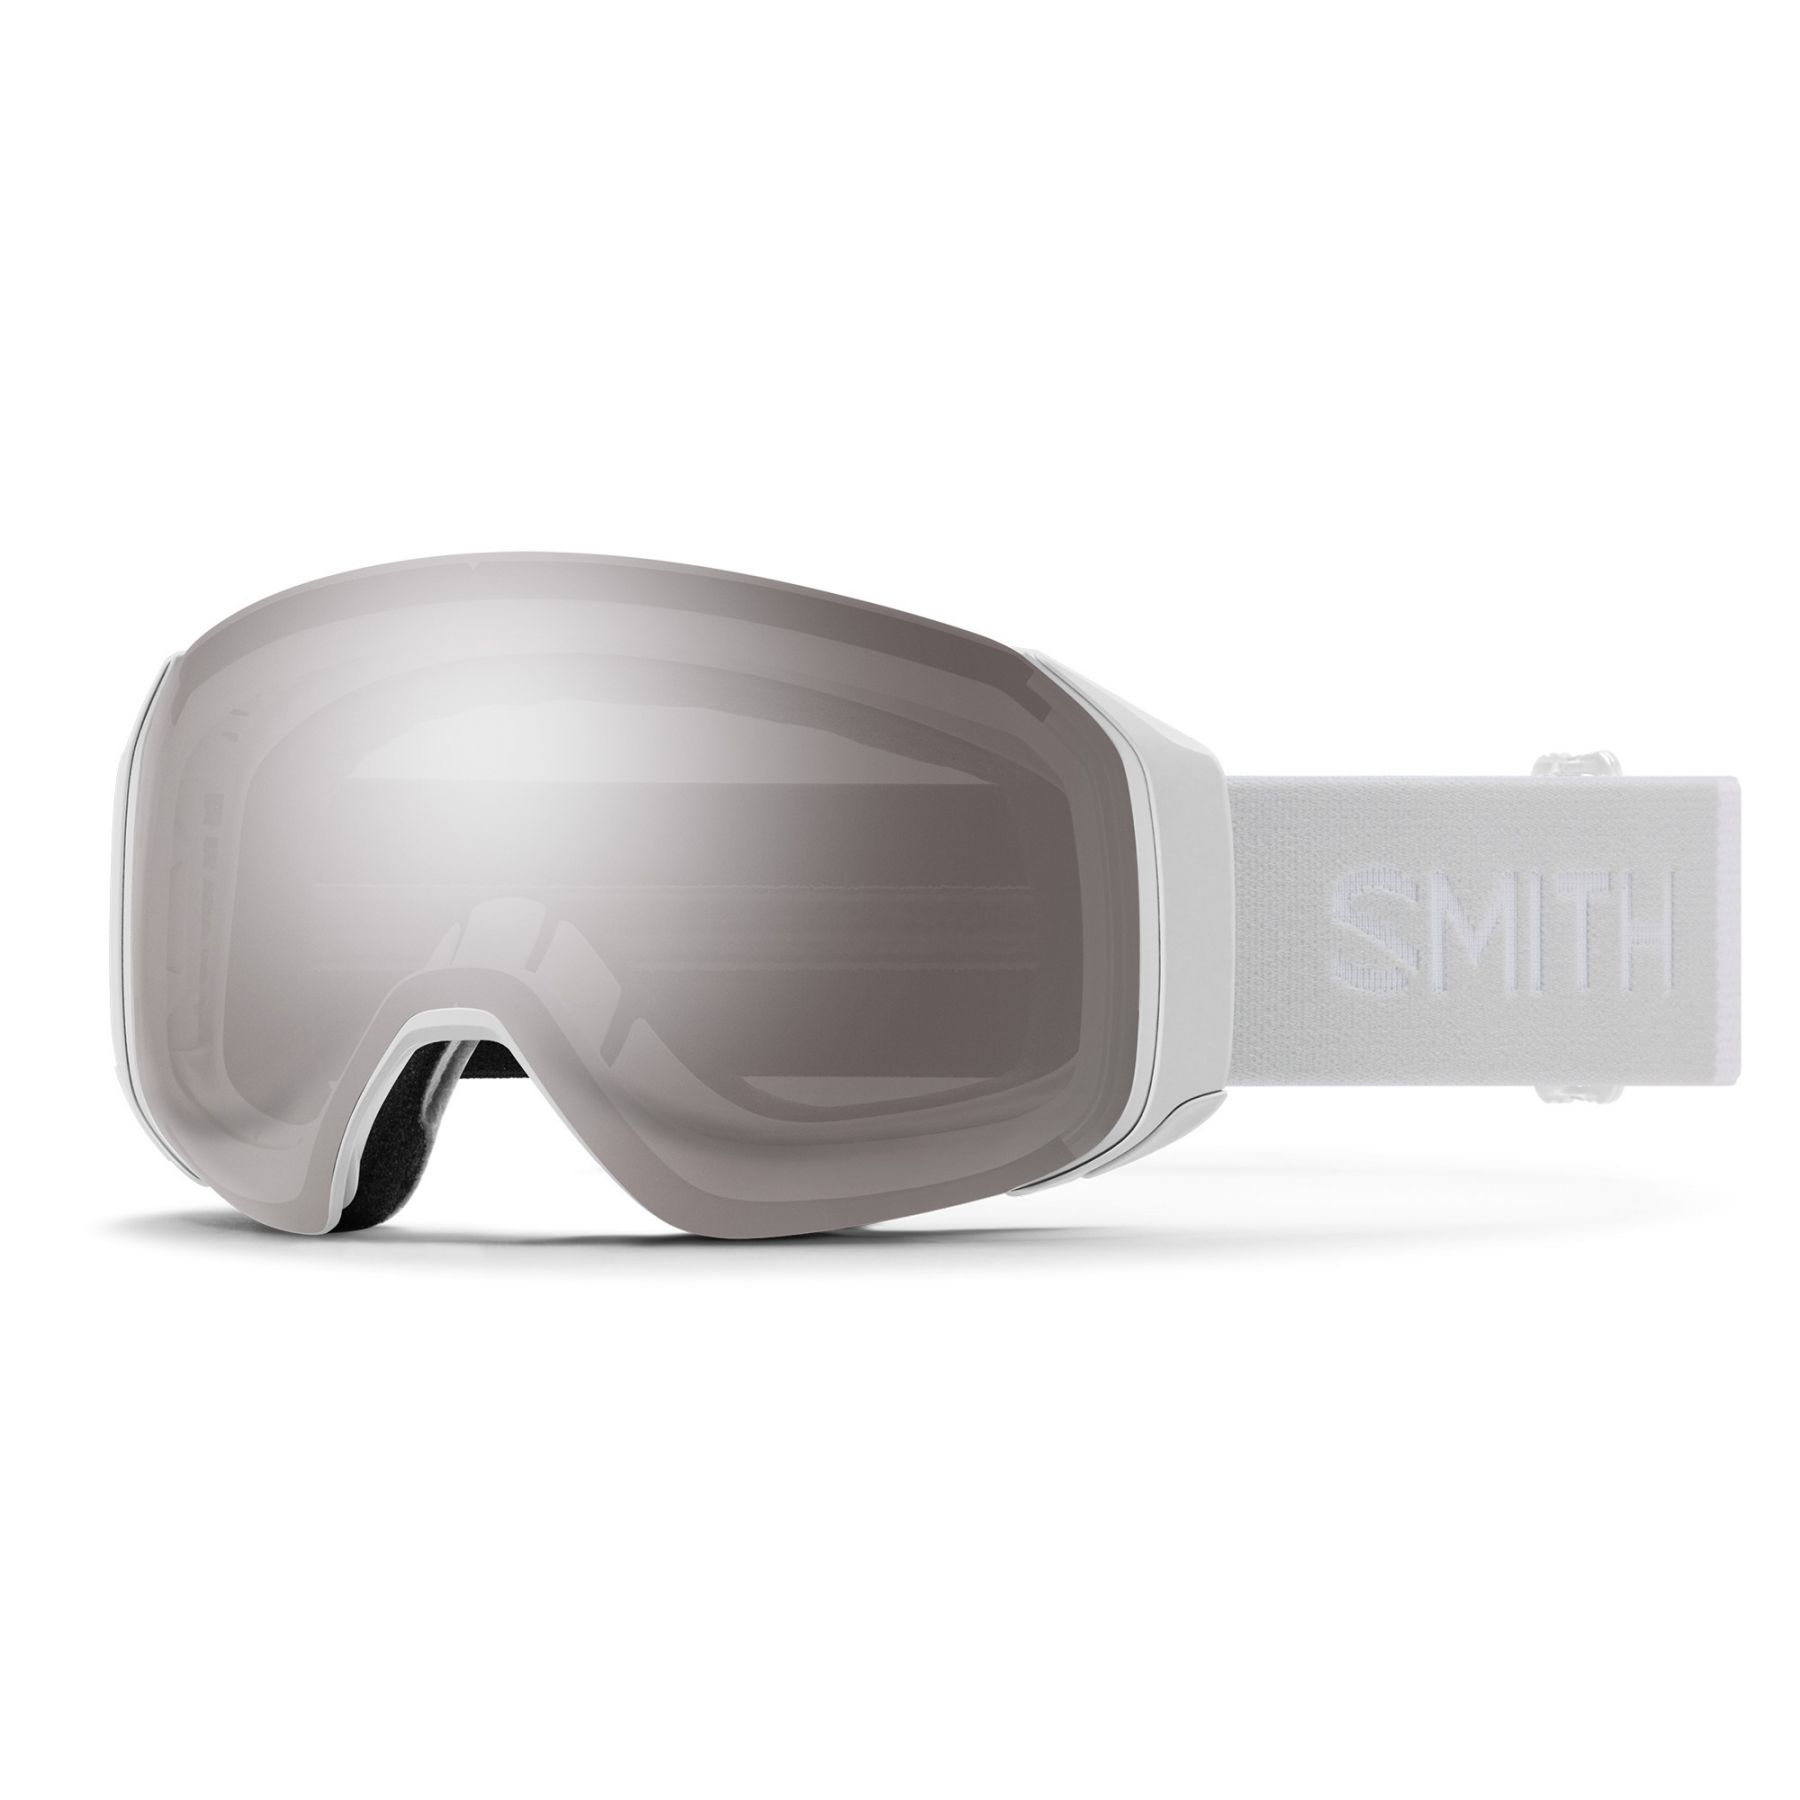 Brug Smith 4D MAG S, skibrille, hvid til en forbedret oplevelse